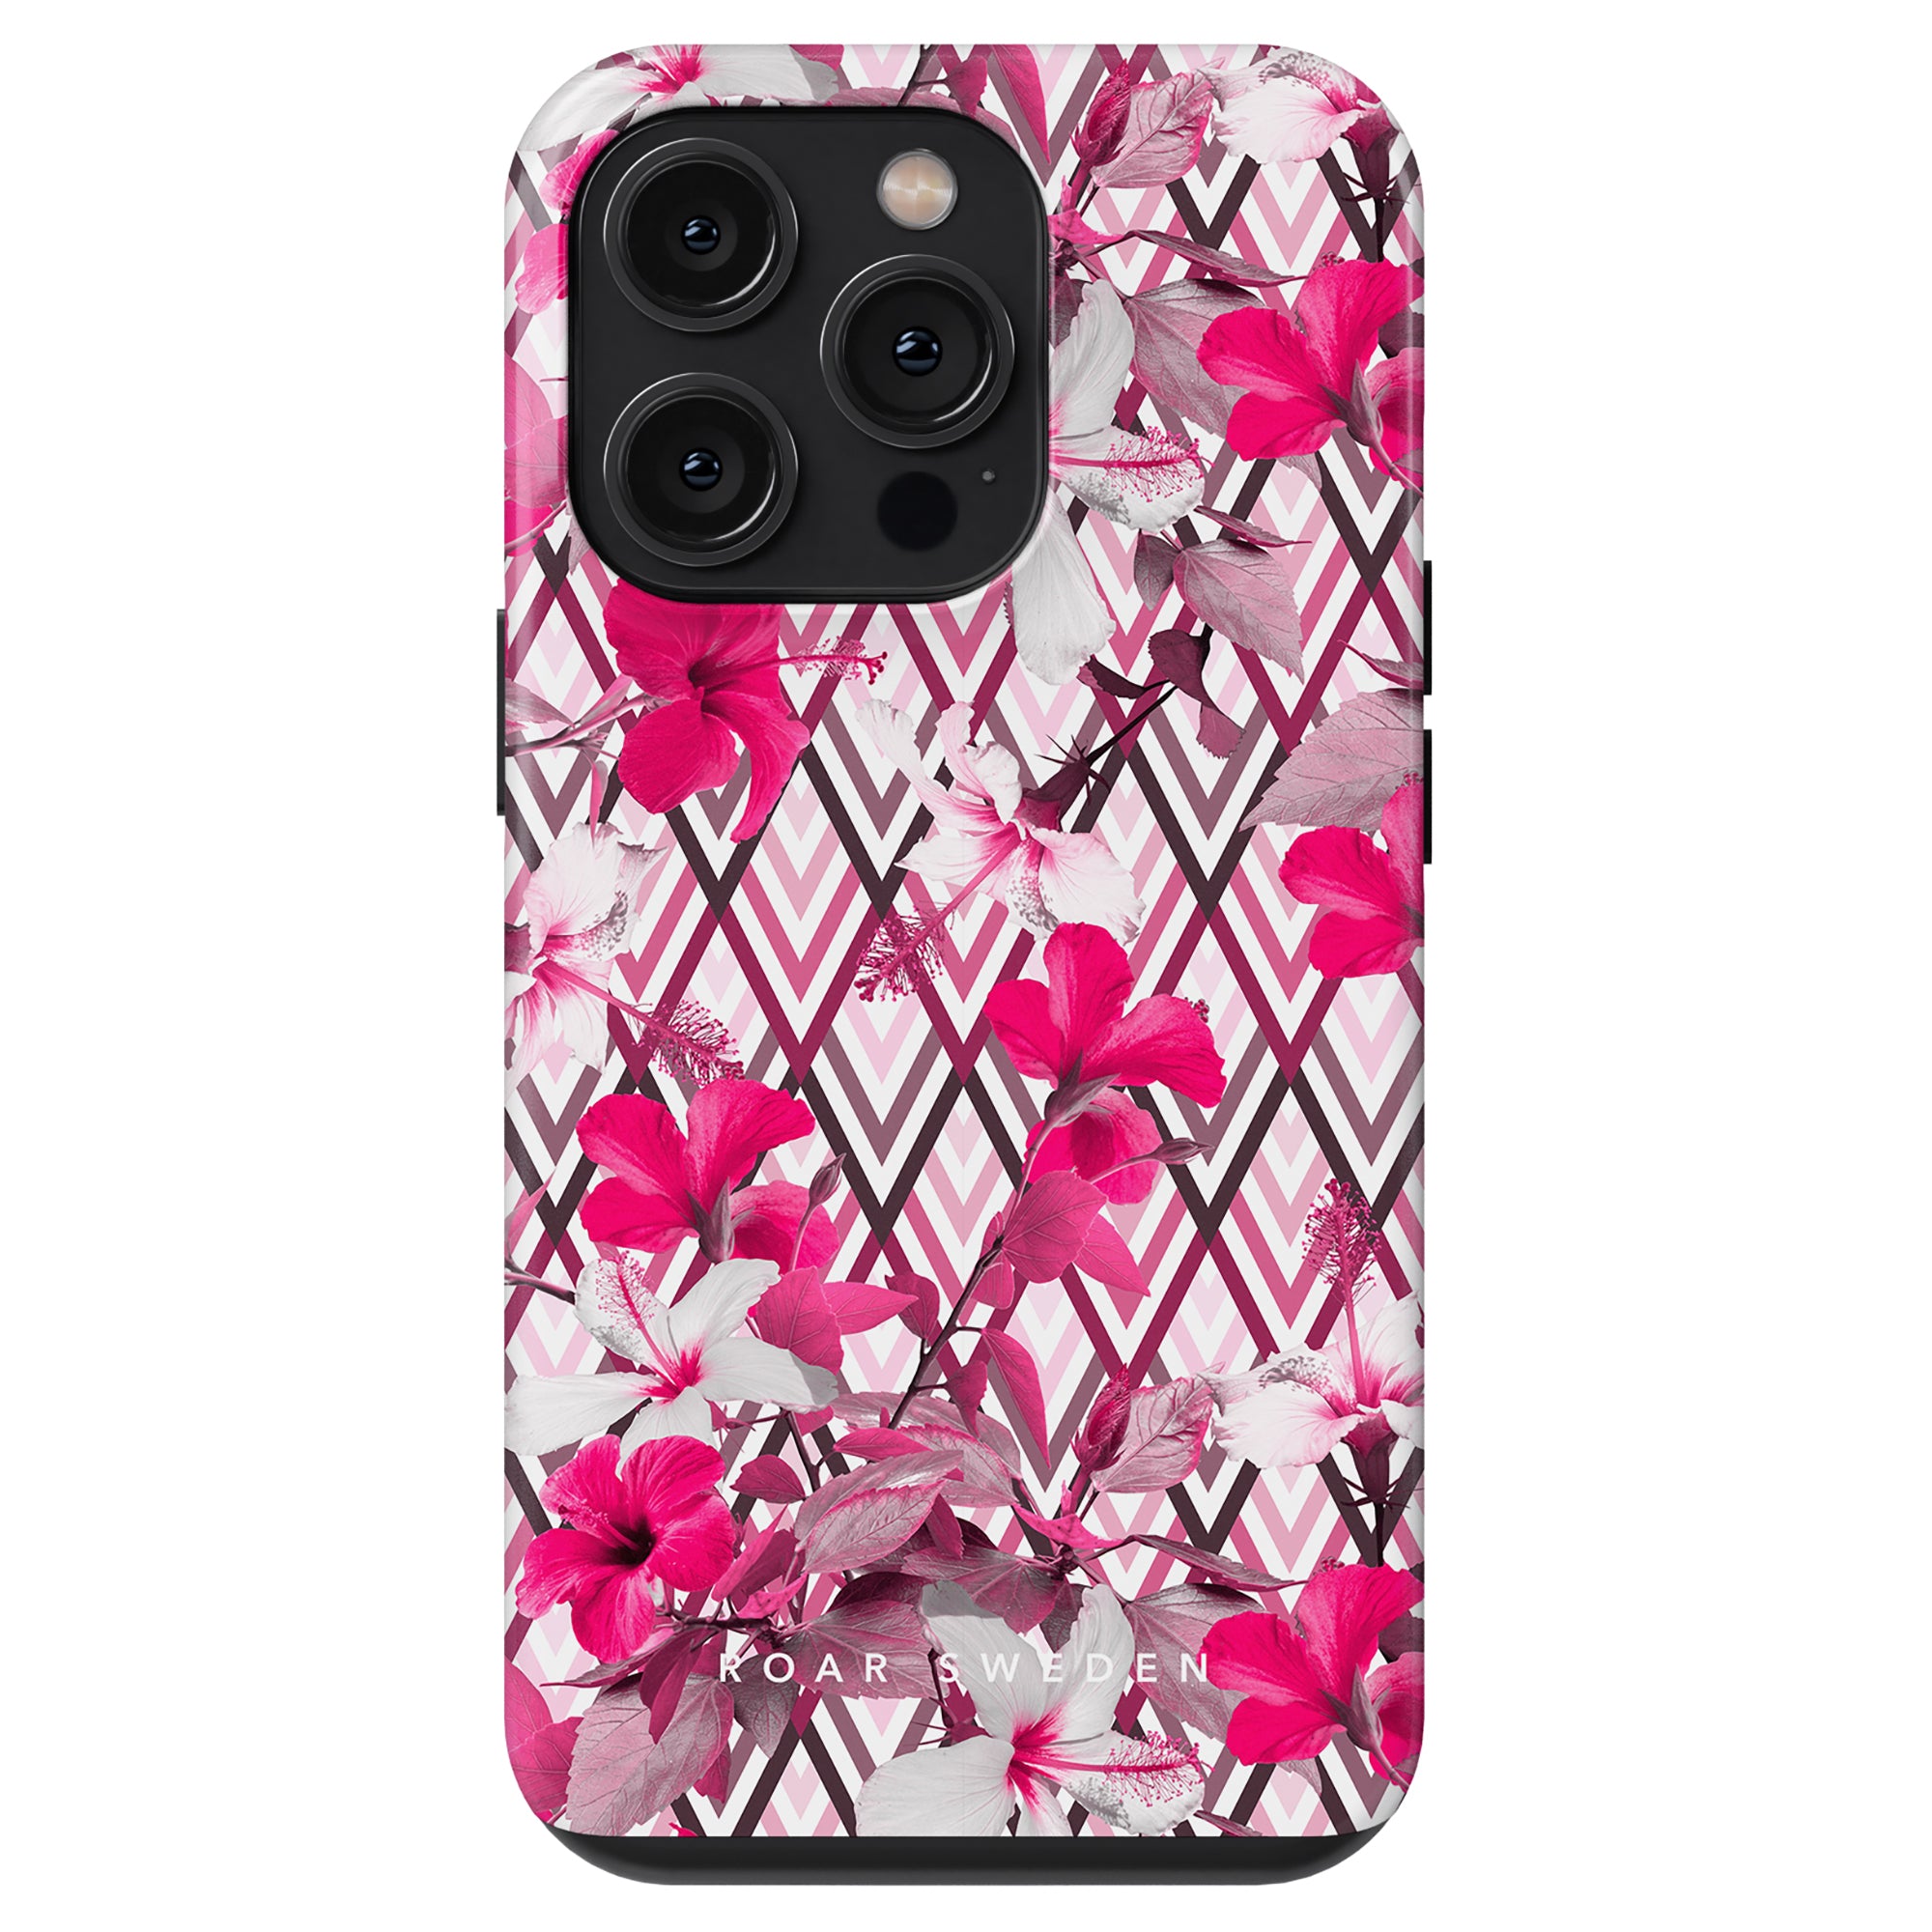 Beskrivning: Ett rosa mobilskal med blommönster för Rhombus - Tough case.